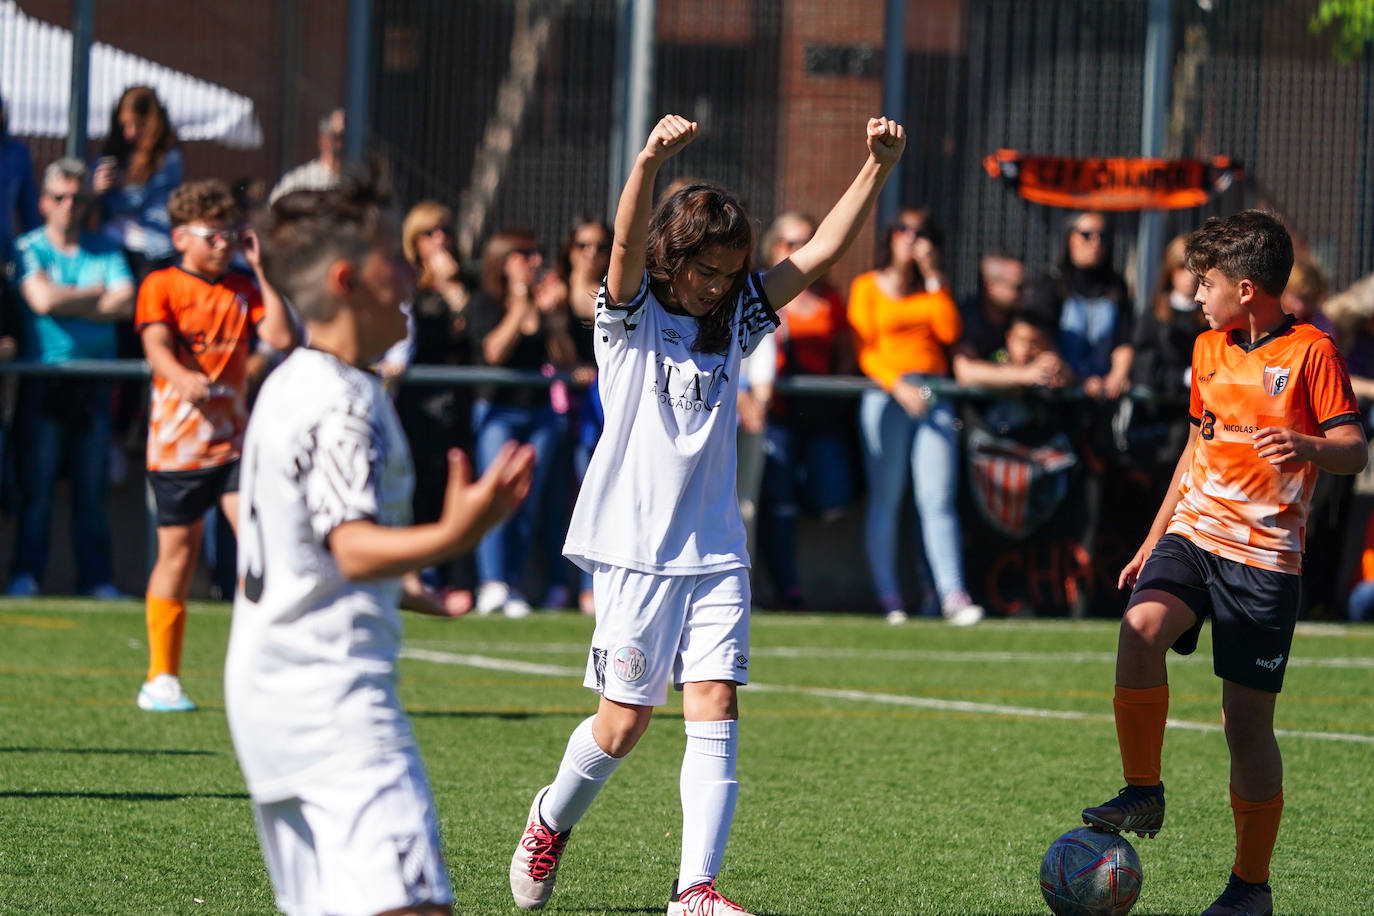 Las mejores imágenes de la vigésimo sexta jornada del fútbol base de Salamanca